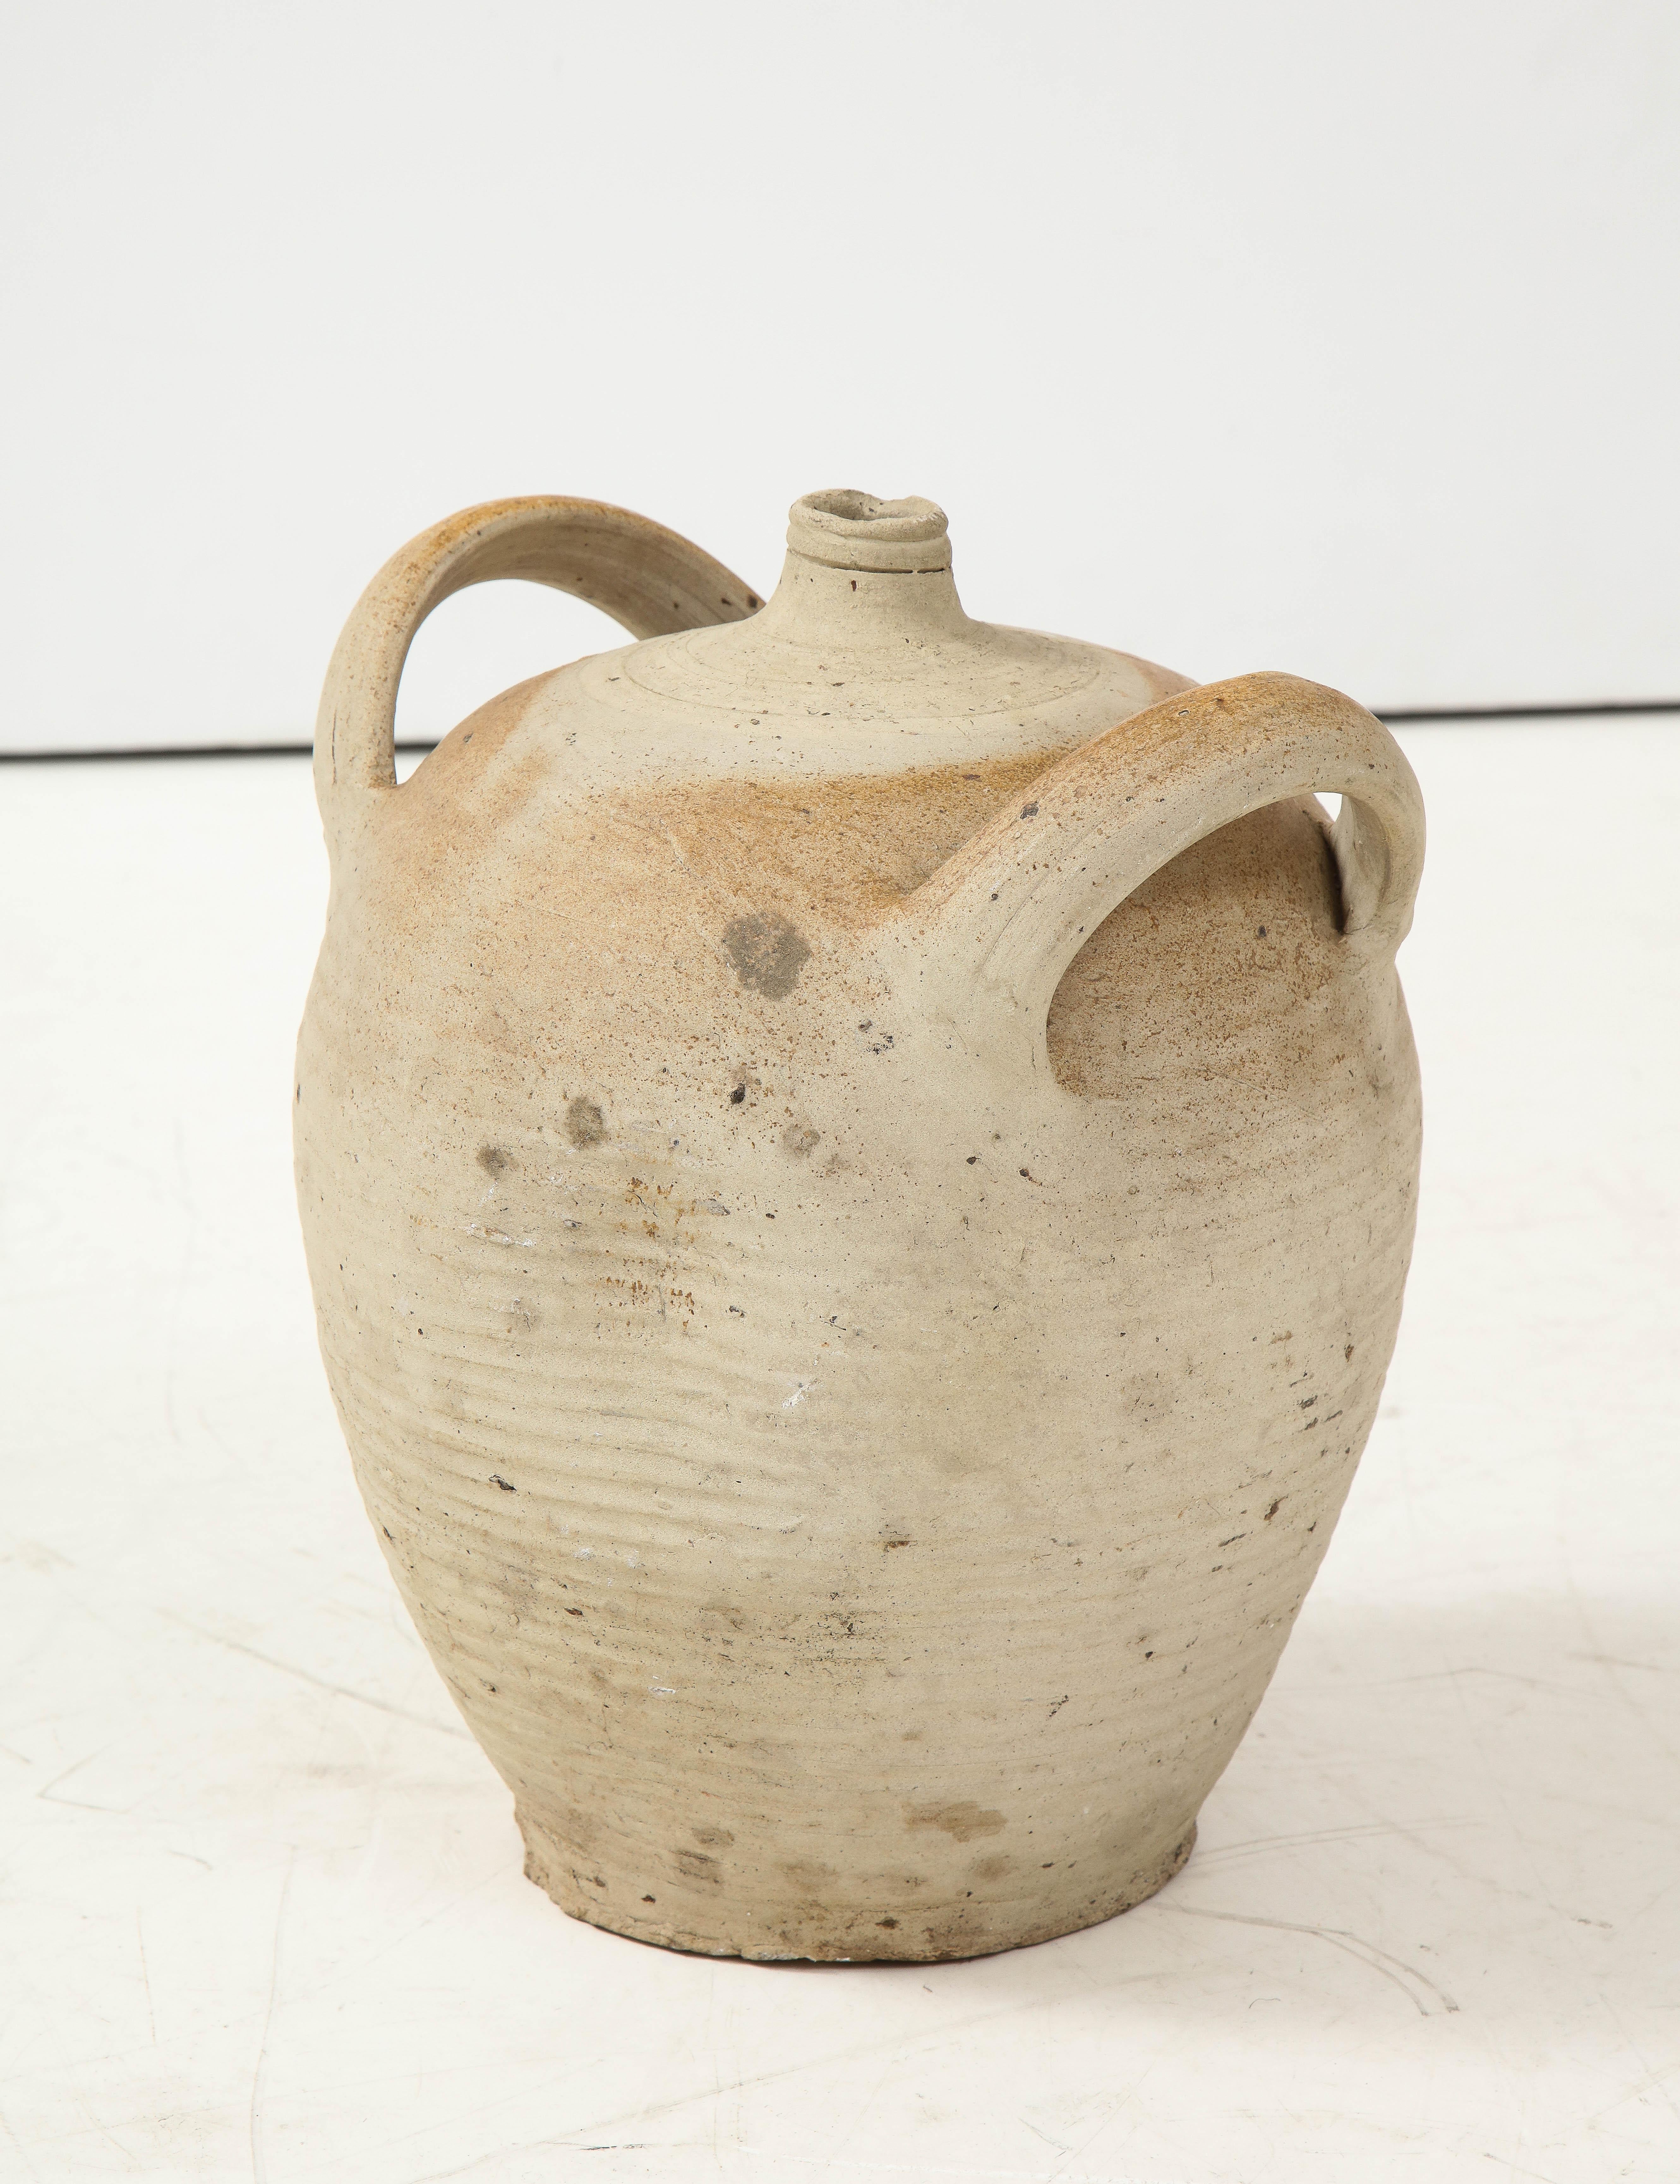 French Provincial Stoneware Vintage Pottery Oil Jar, Jug, Vase or Vessel 7